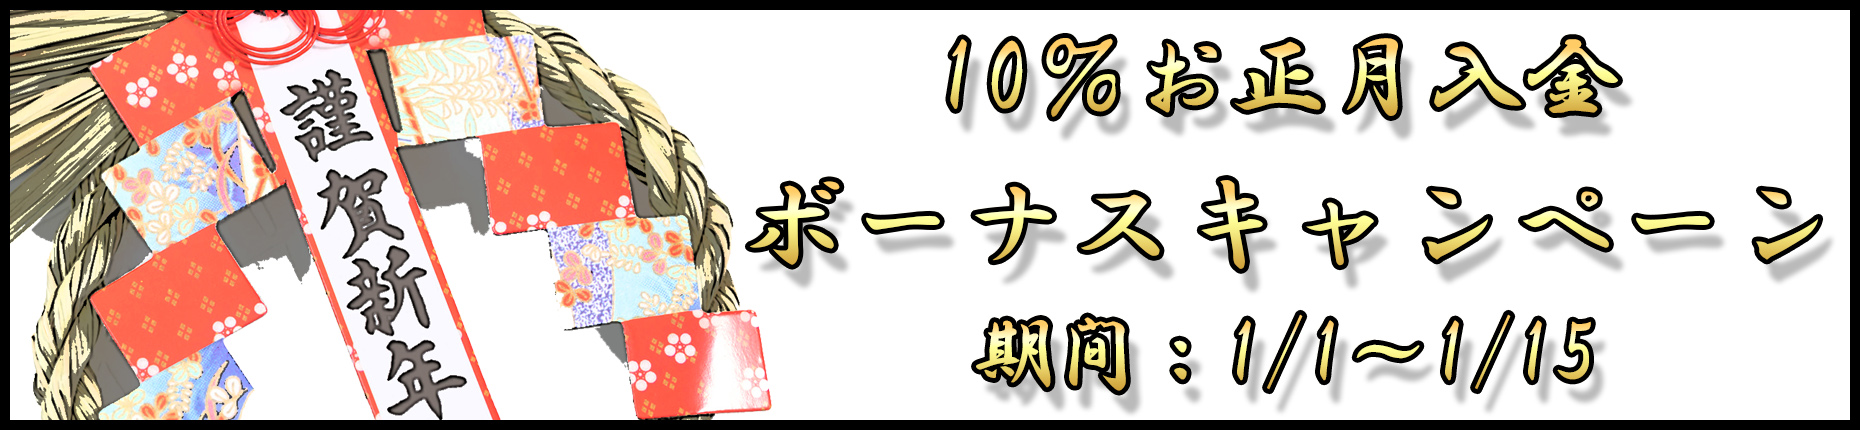 【FXDD】お正月10%入金ボーナスキャンペーン